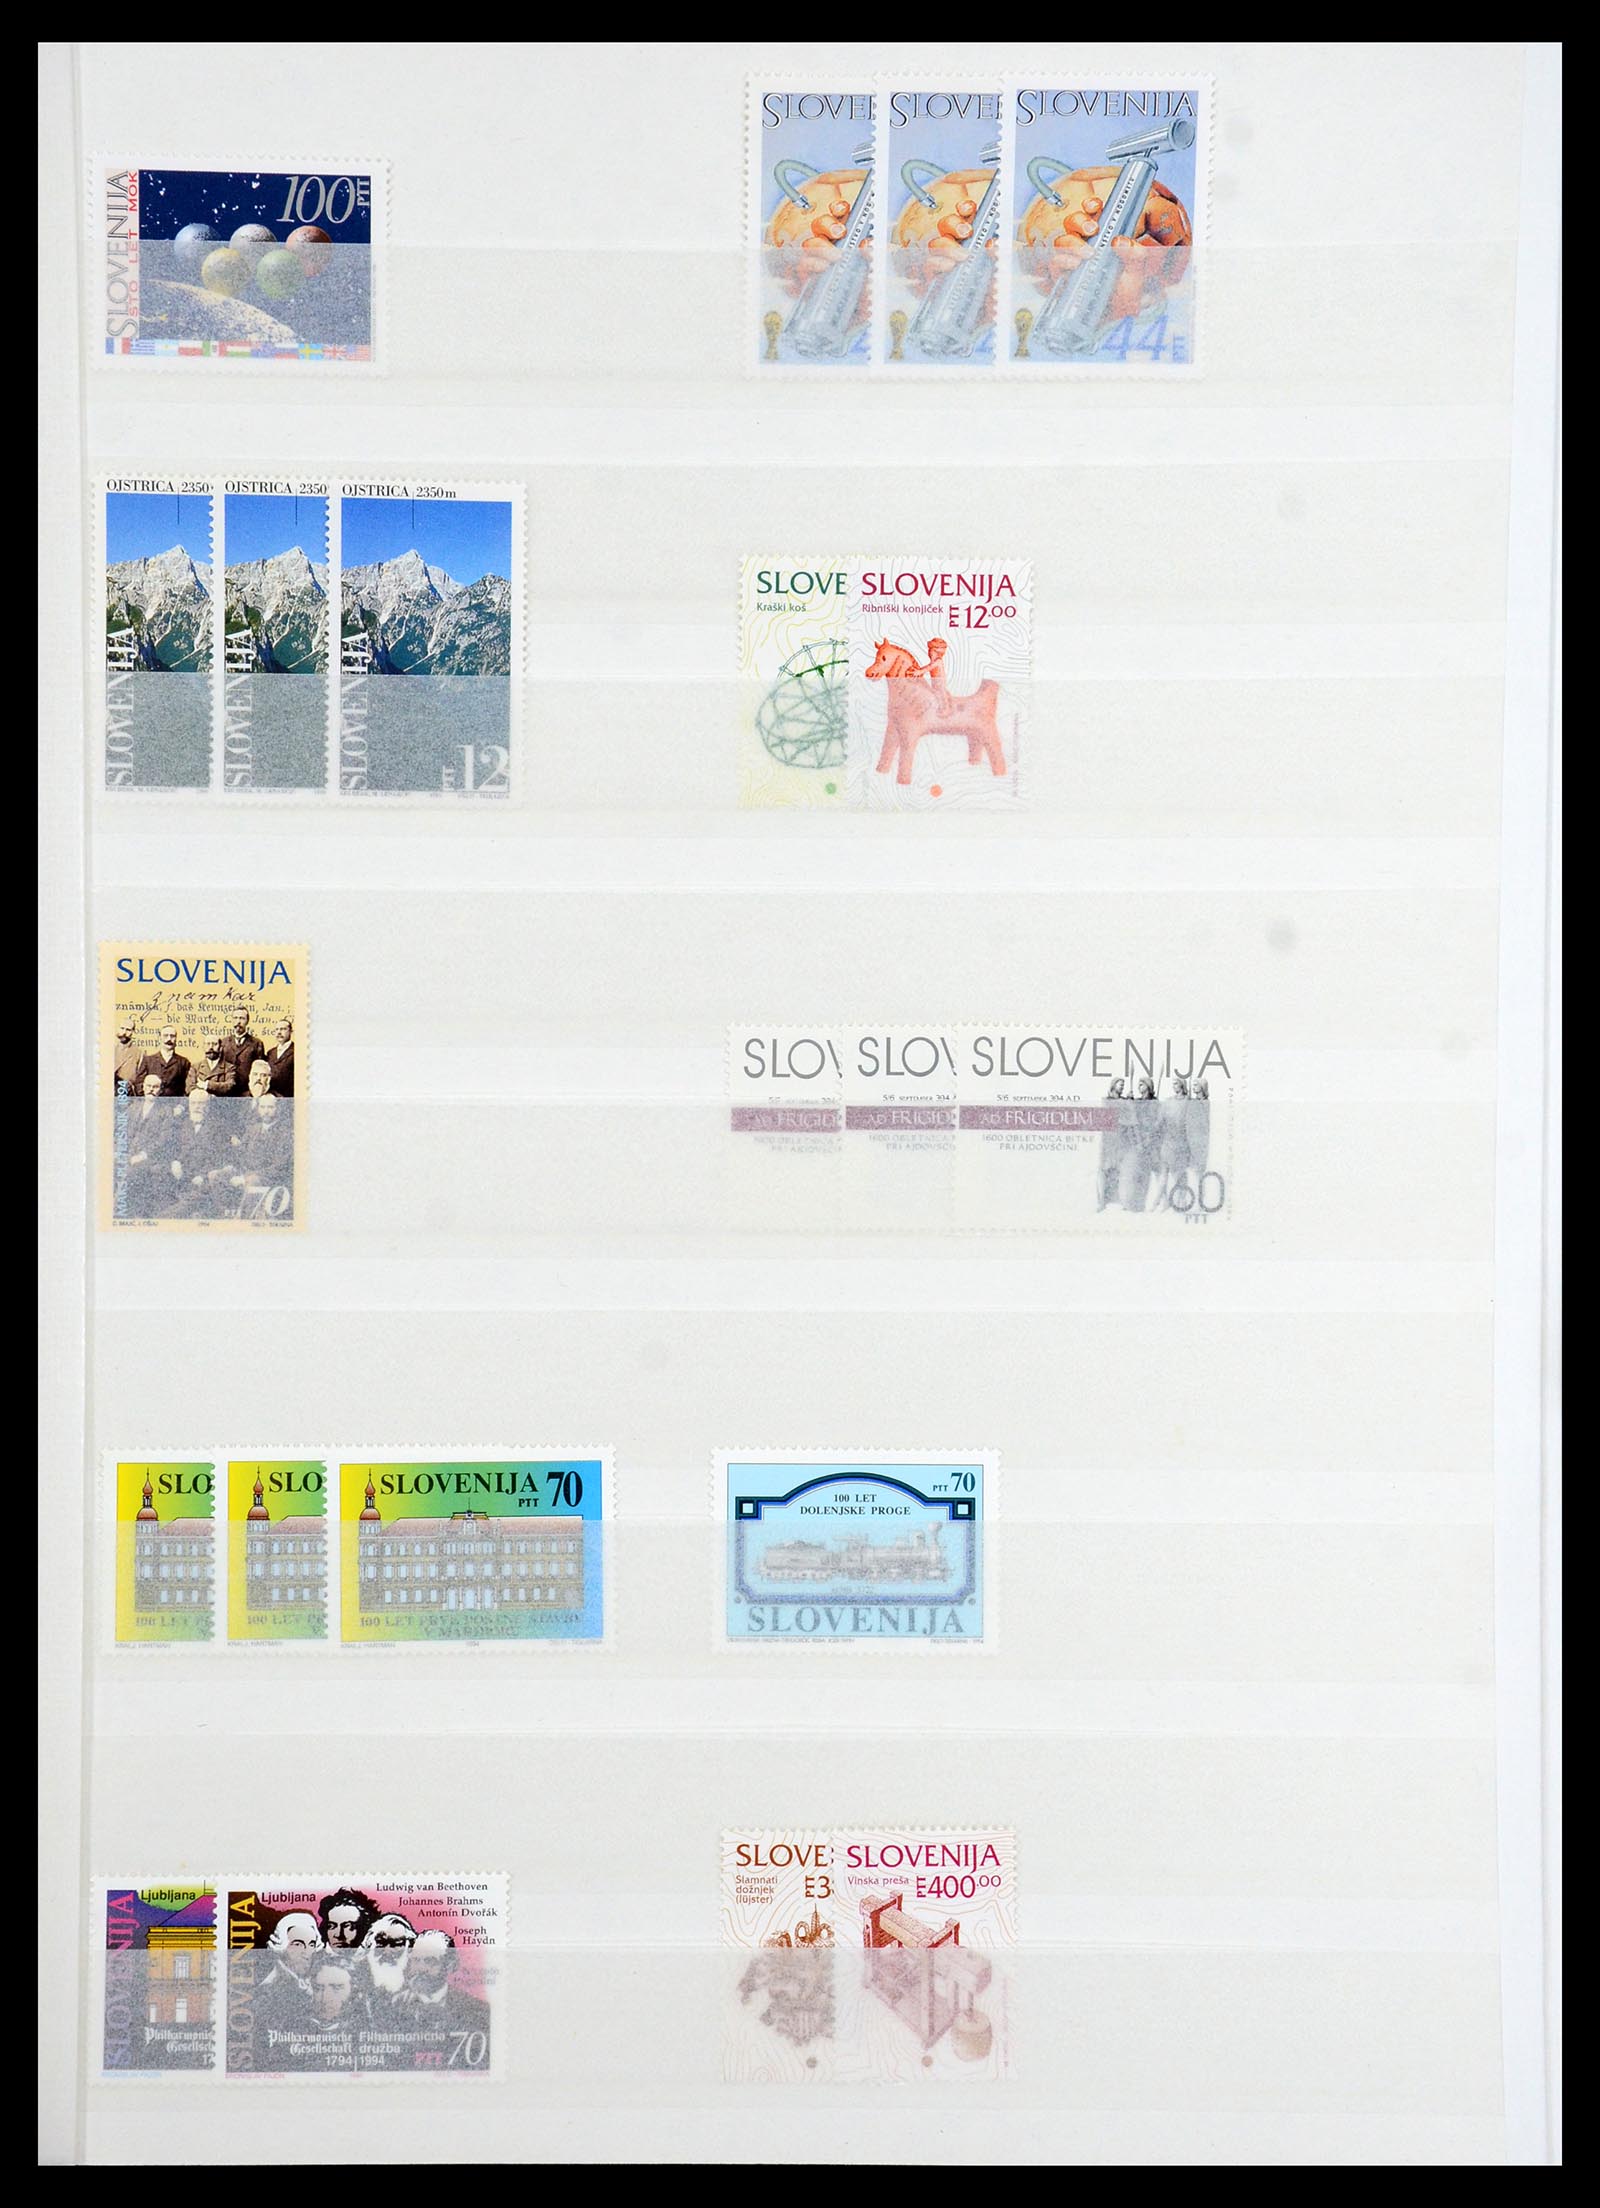 36461 011 - Stamp collection 36461 Slovenia, Croatia and Bosnia-Herzegovina MNH 1991